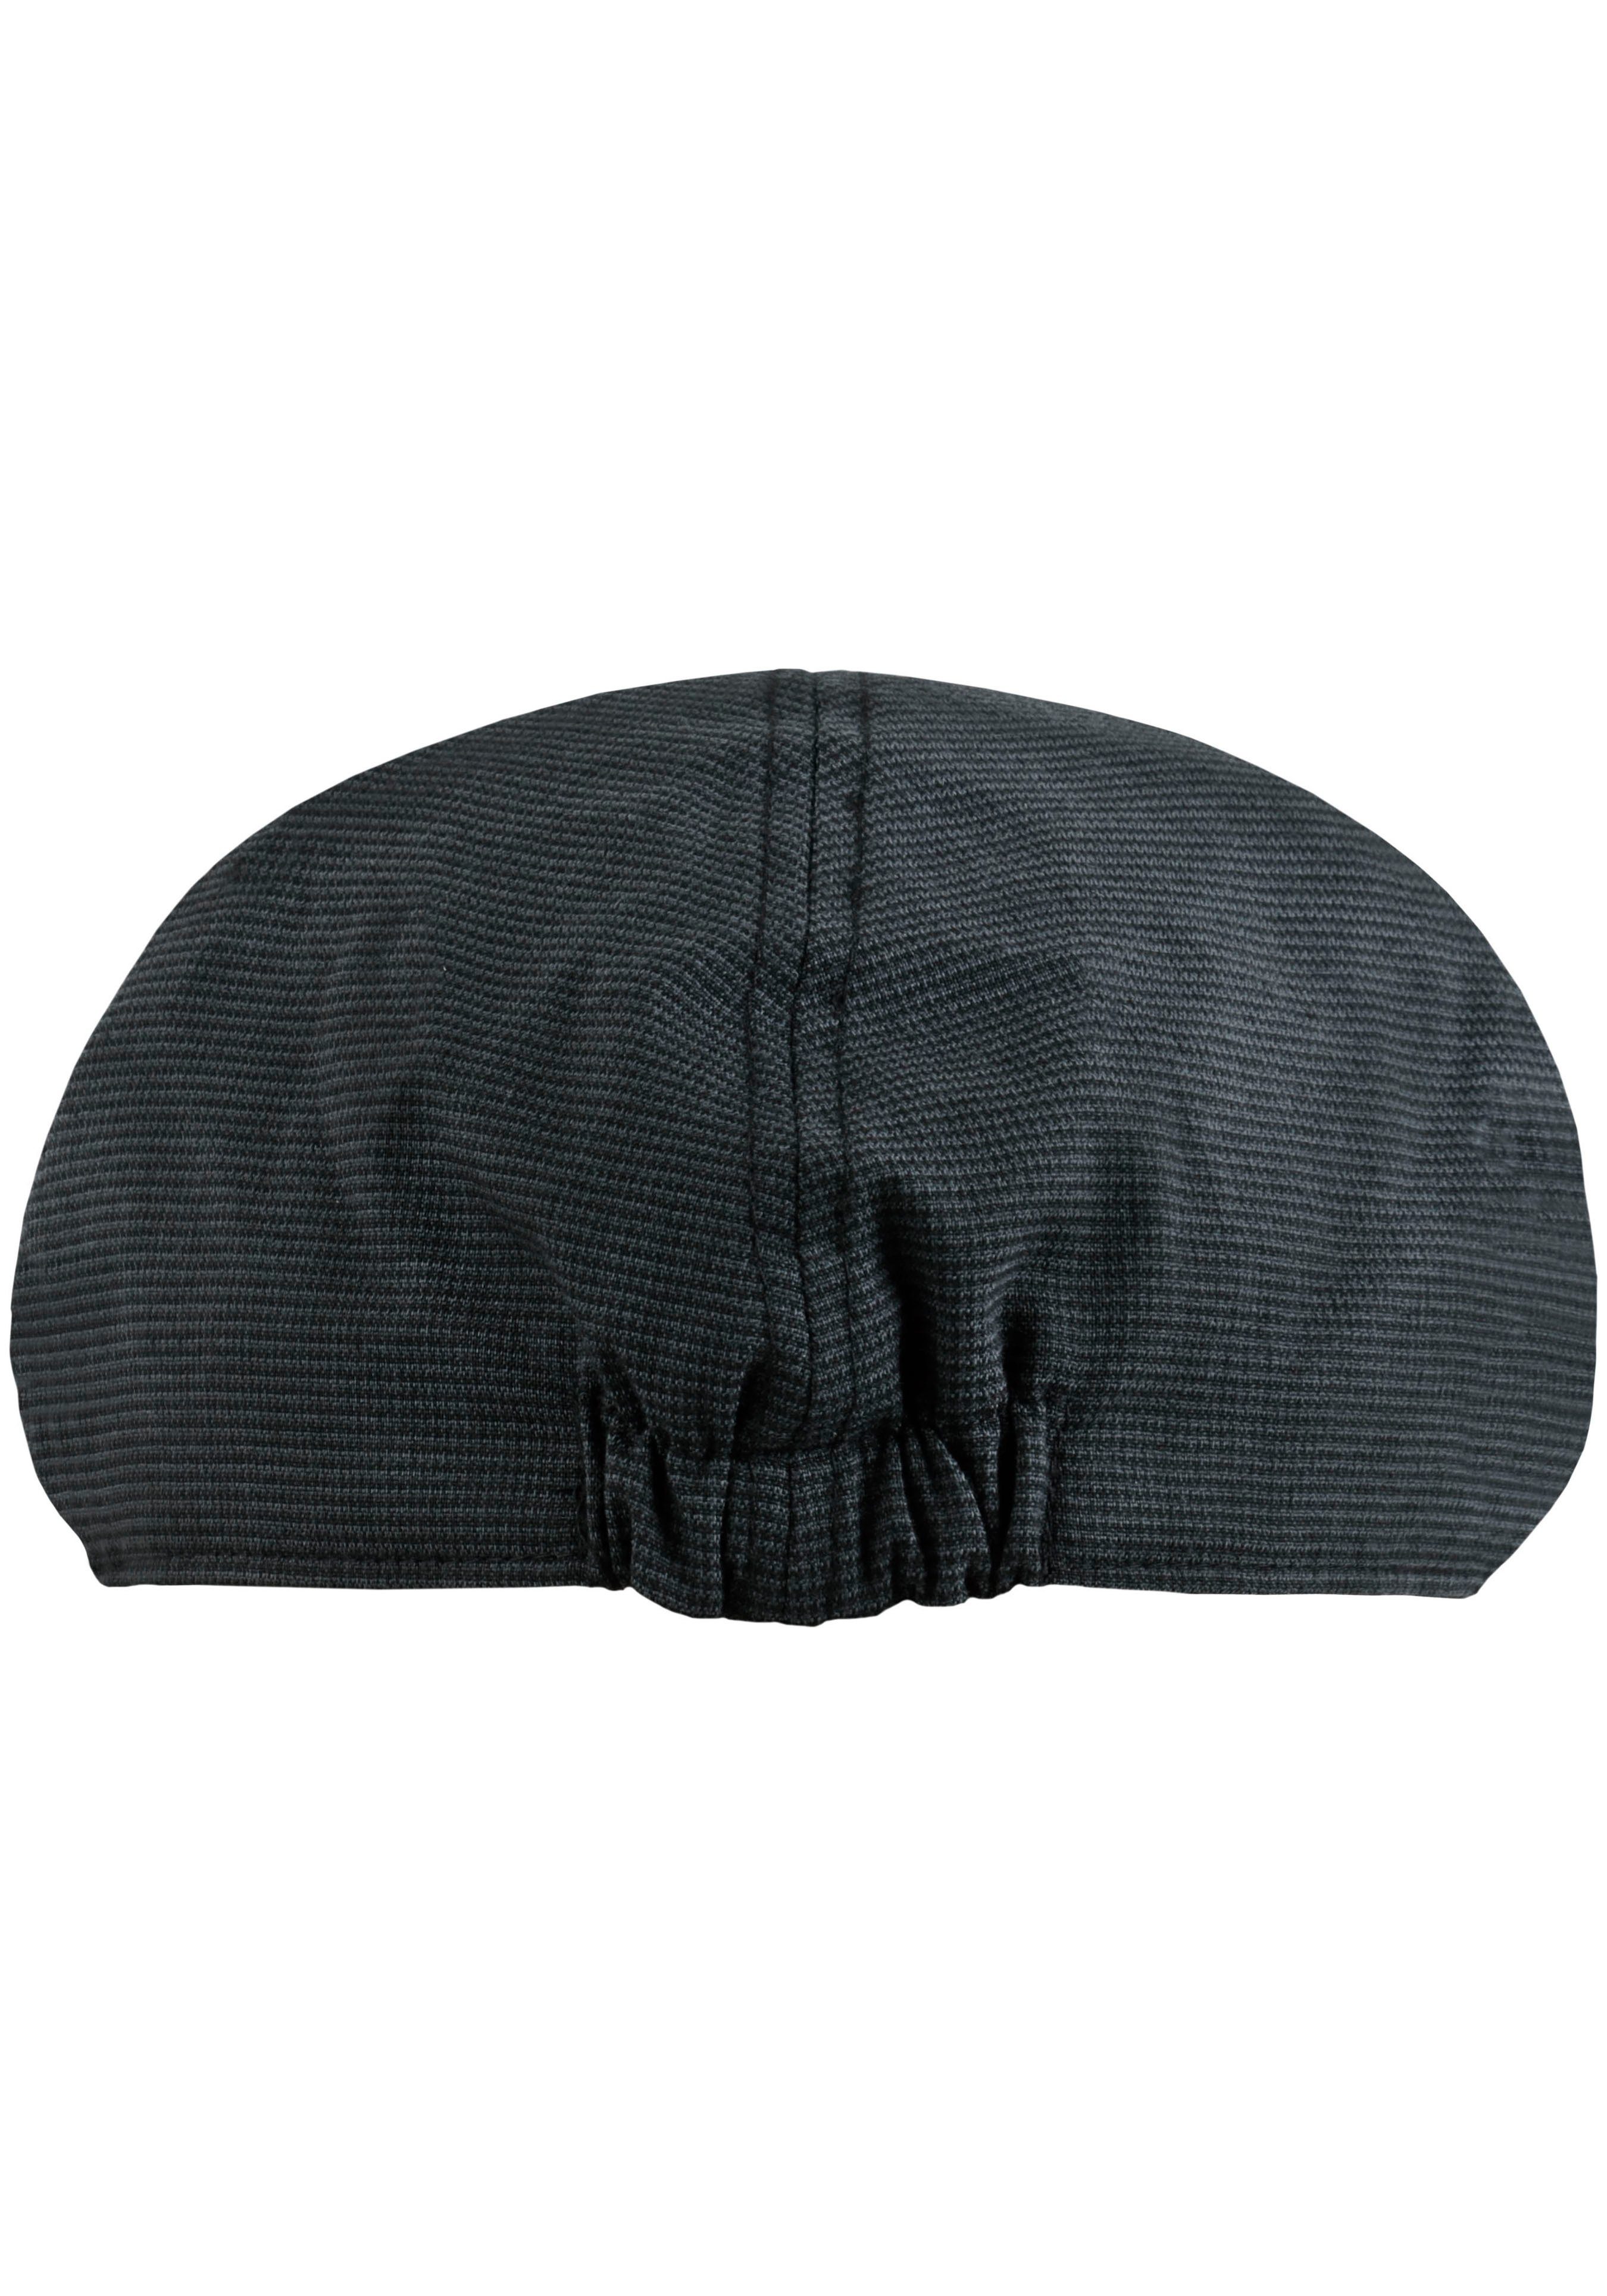 chillouts Schiebermütze Kyoto Hat Flat mit Karomuster grau-schwarz feinem Cap